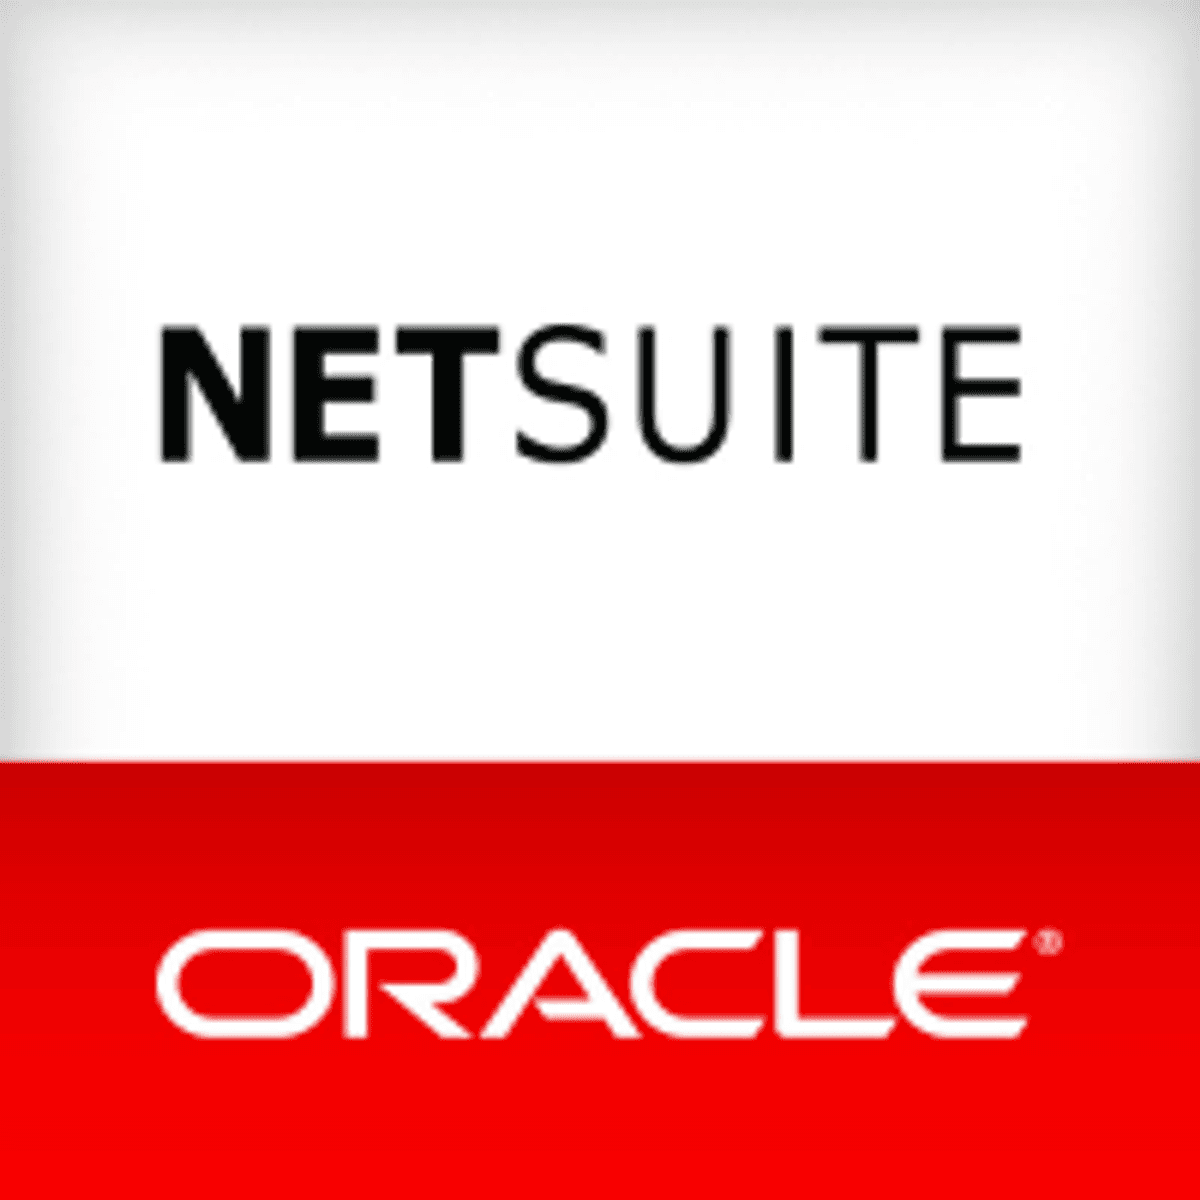 Oracle NetSuite kondigt wereldwijde uitbreidingsinitiatieven aan image